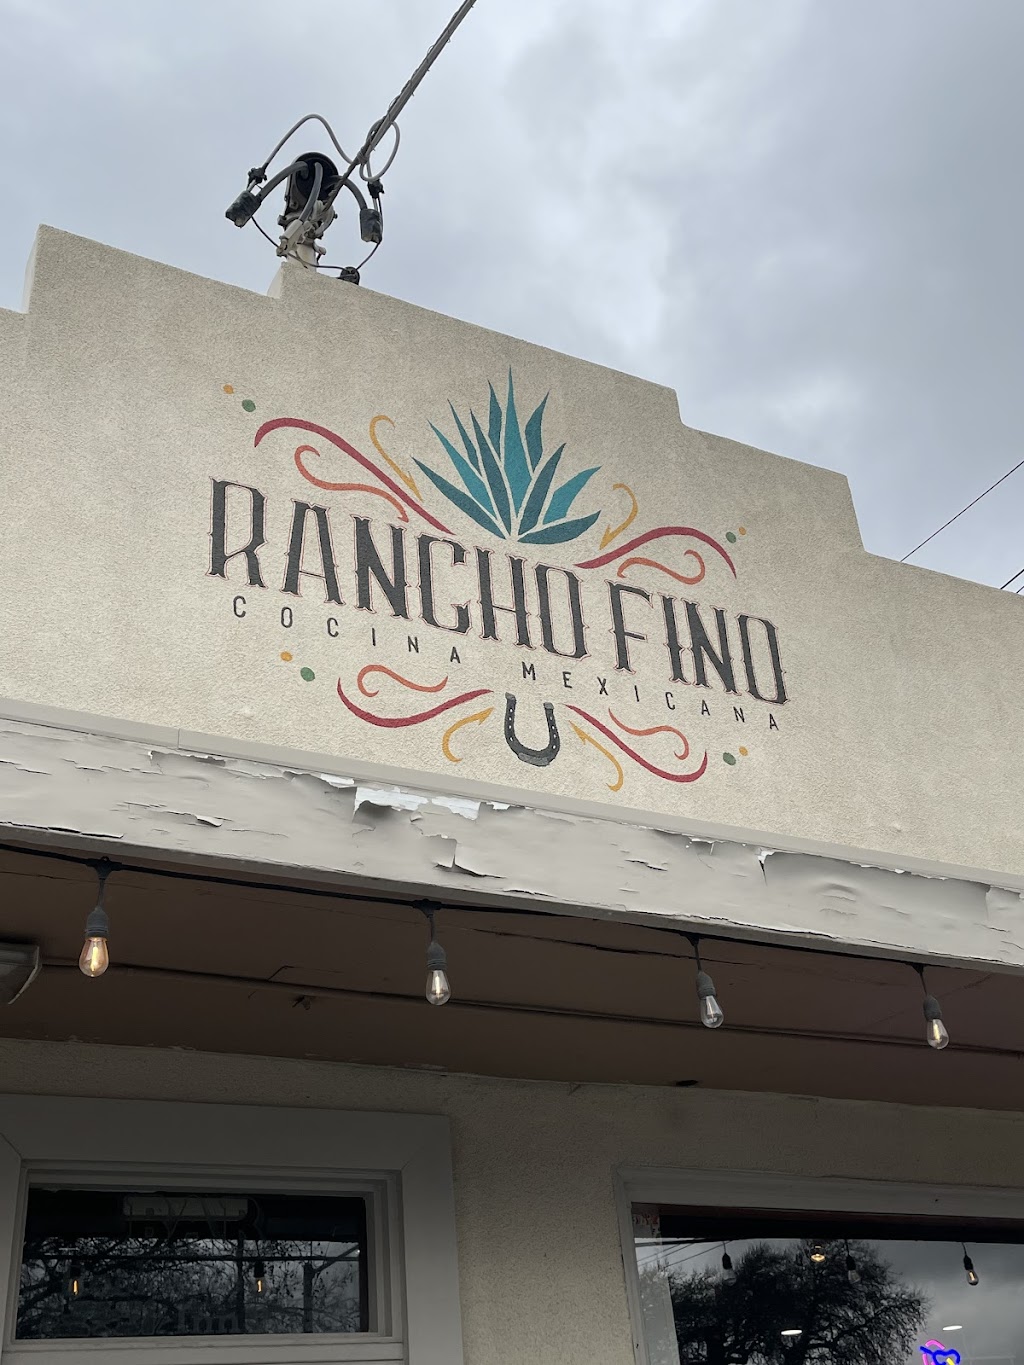 Rancho Fino Cocina Mexicana | 4163 Suisun Valley Rd, Fairfield, CA 94534 | Phone: (707) 439-3744